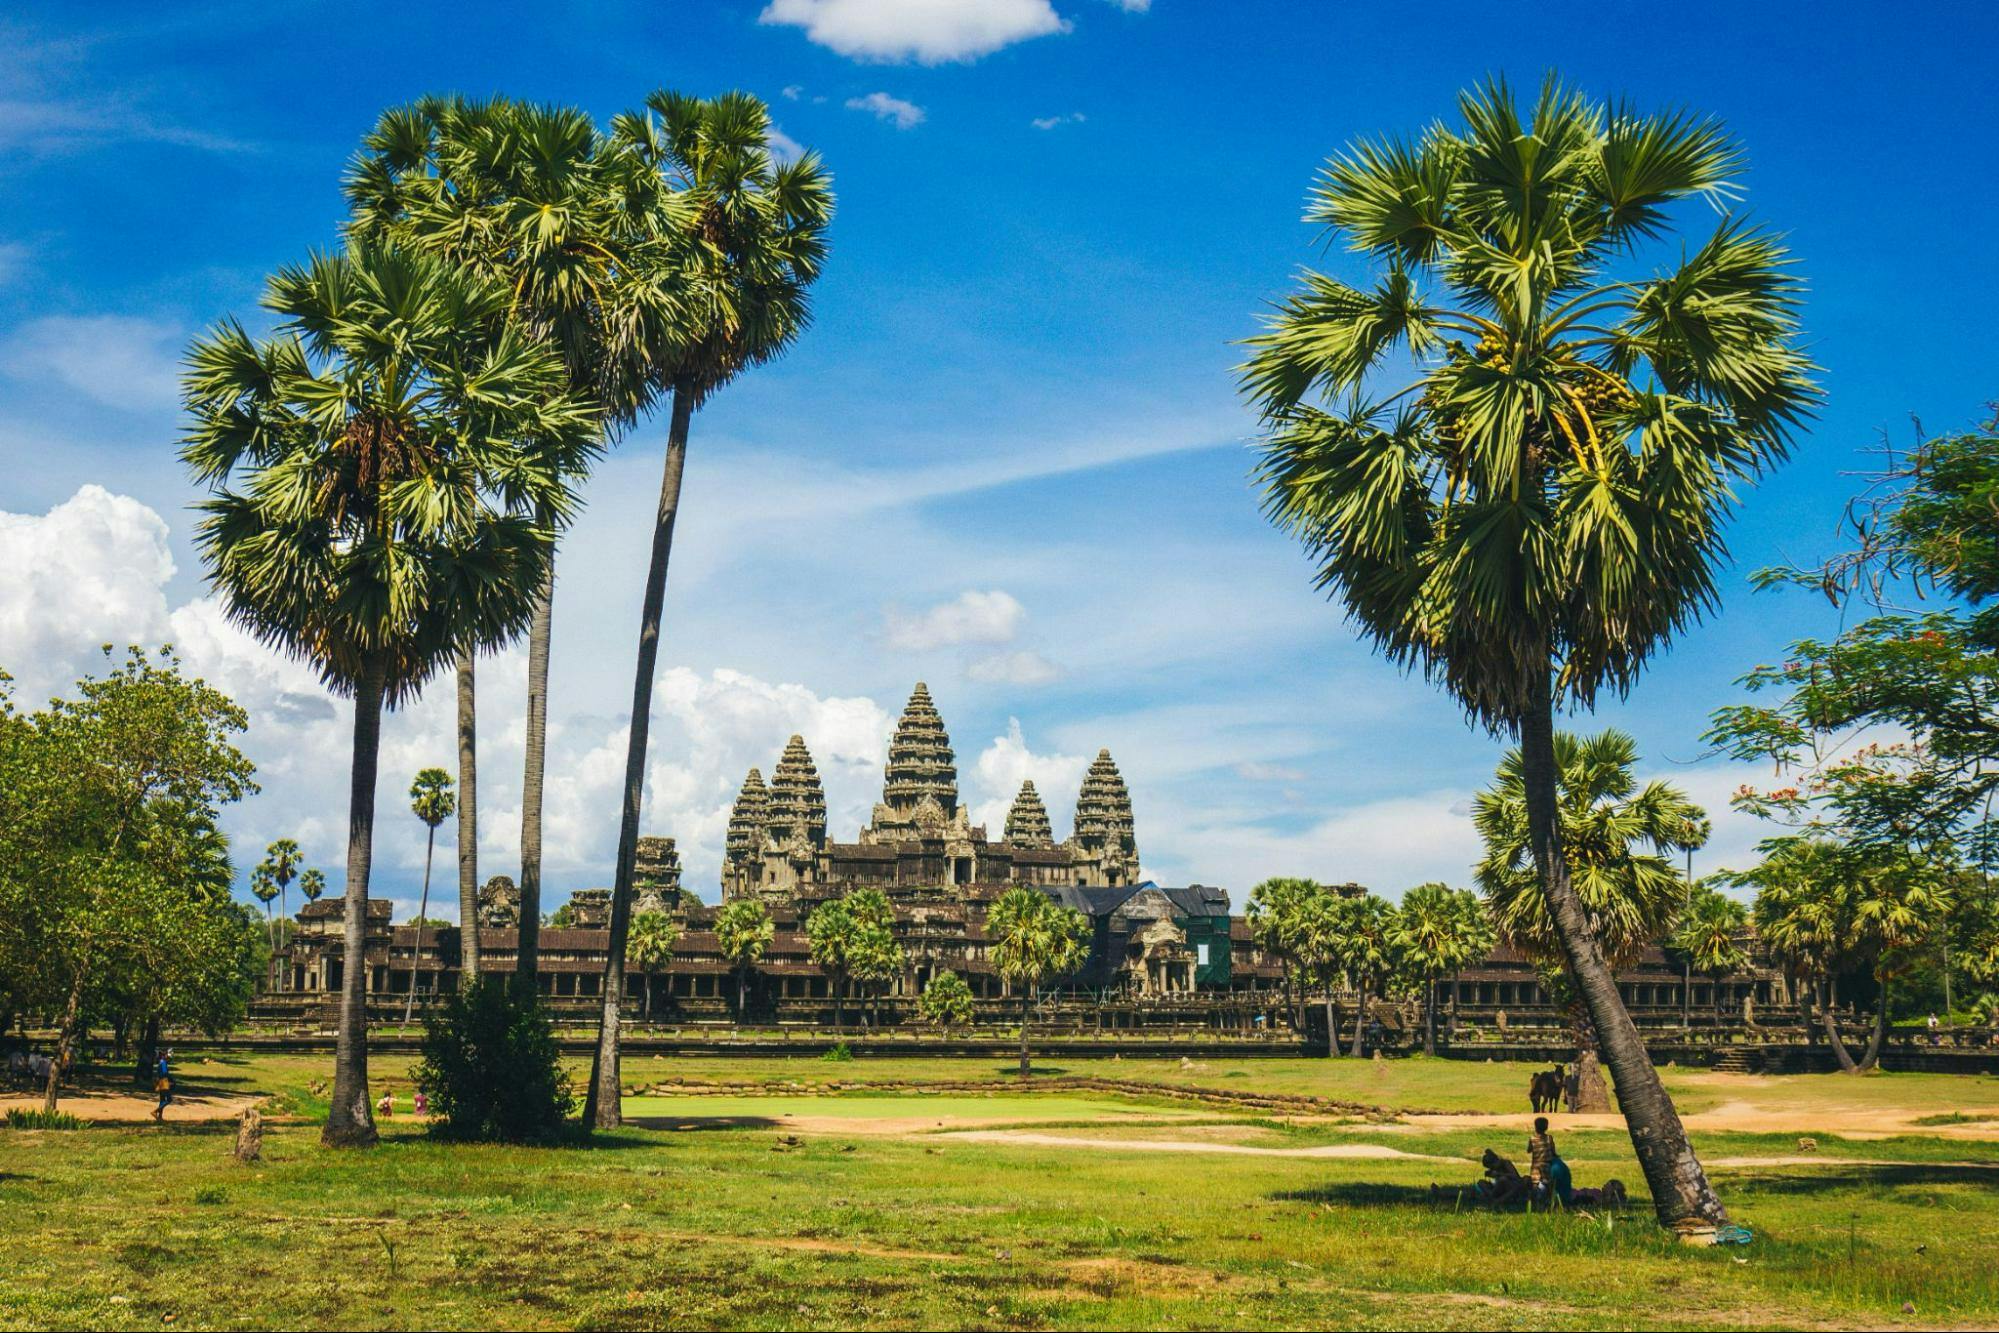 Cambodia Tourist Visa